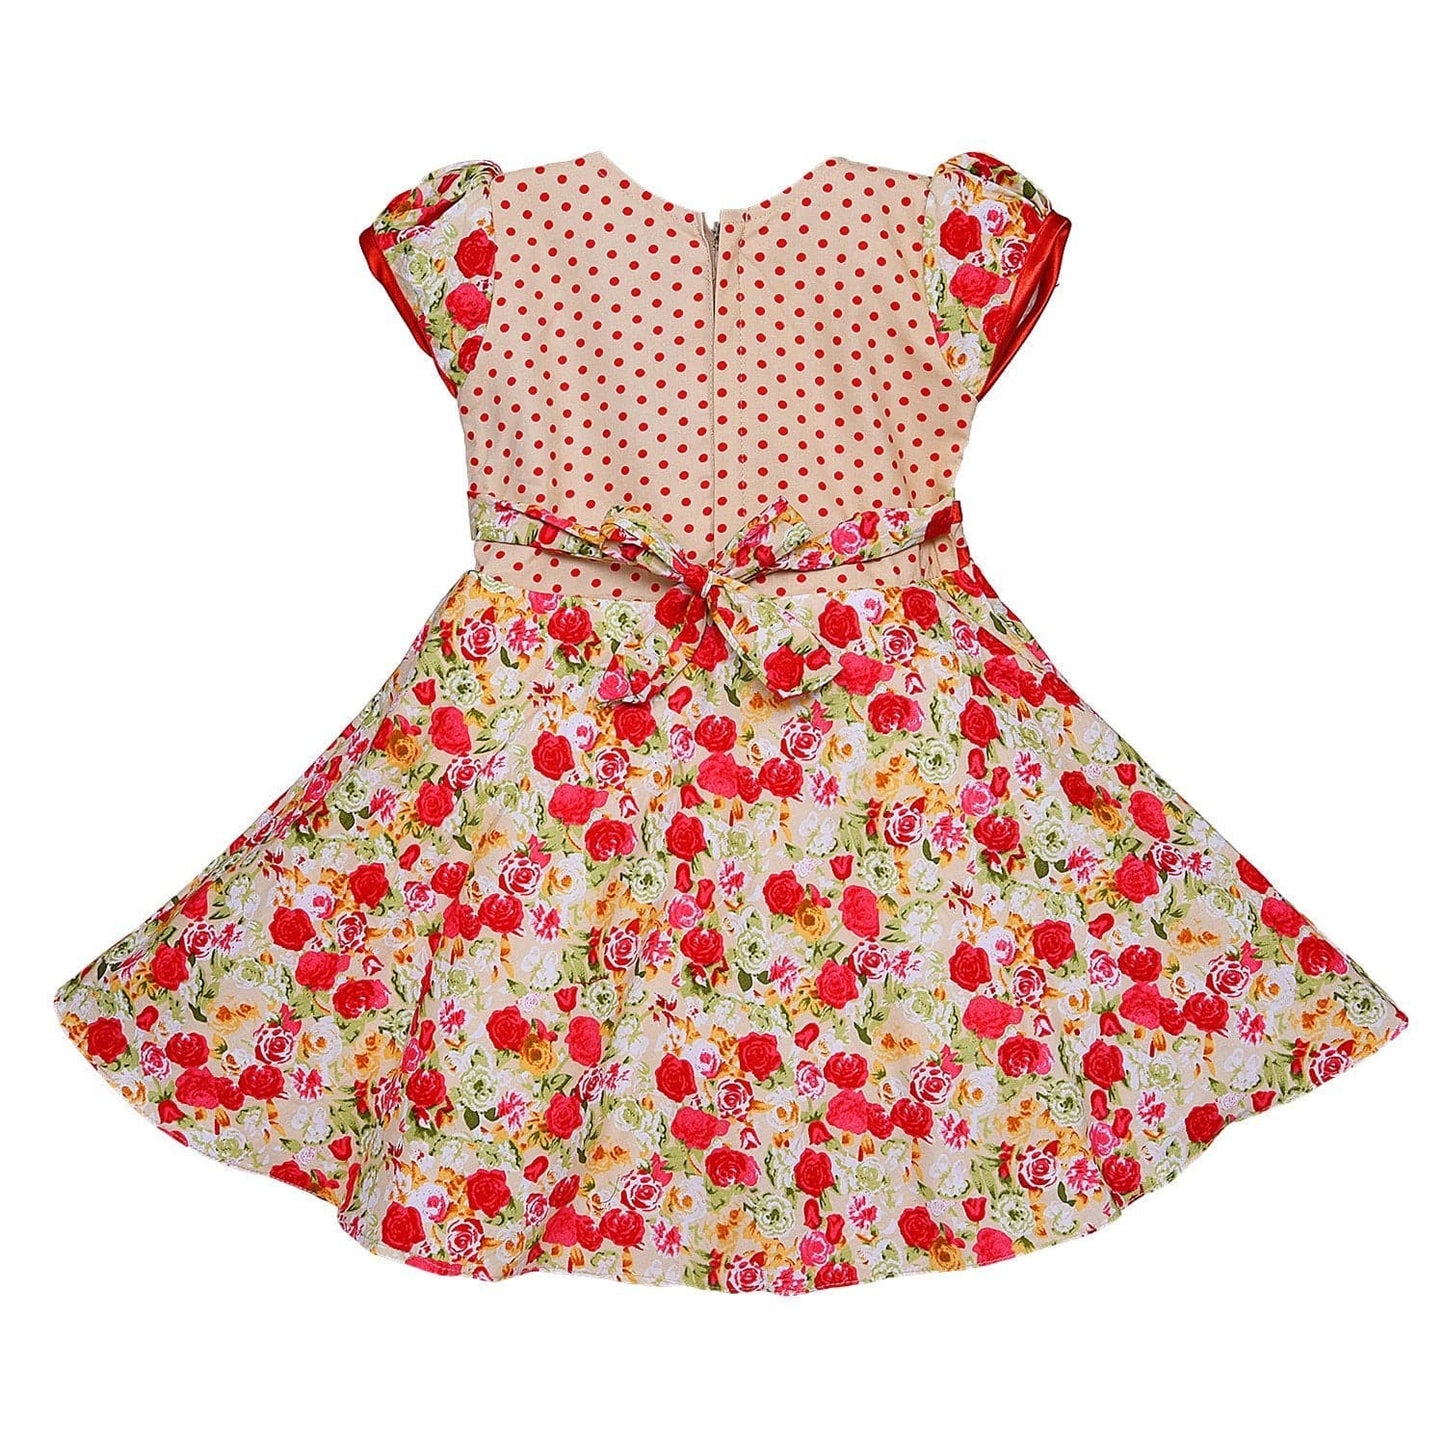 Baby Girls Cotton Frock Dress Ctn254rd - Wish Karo Cotton Wear - frocks Cotton Wear - baby dress